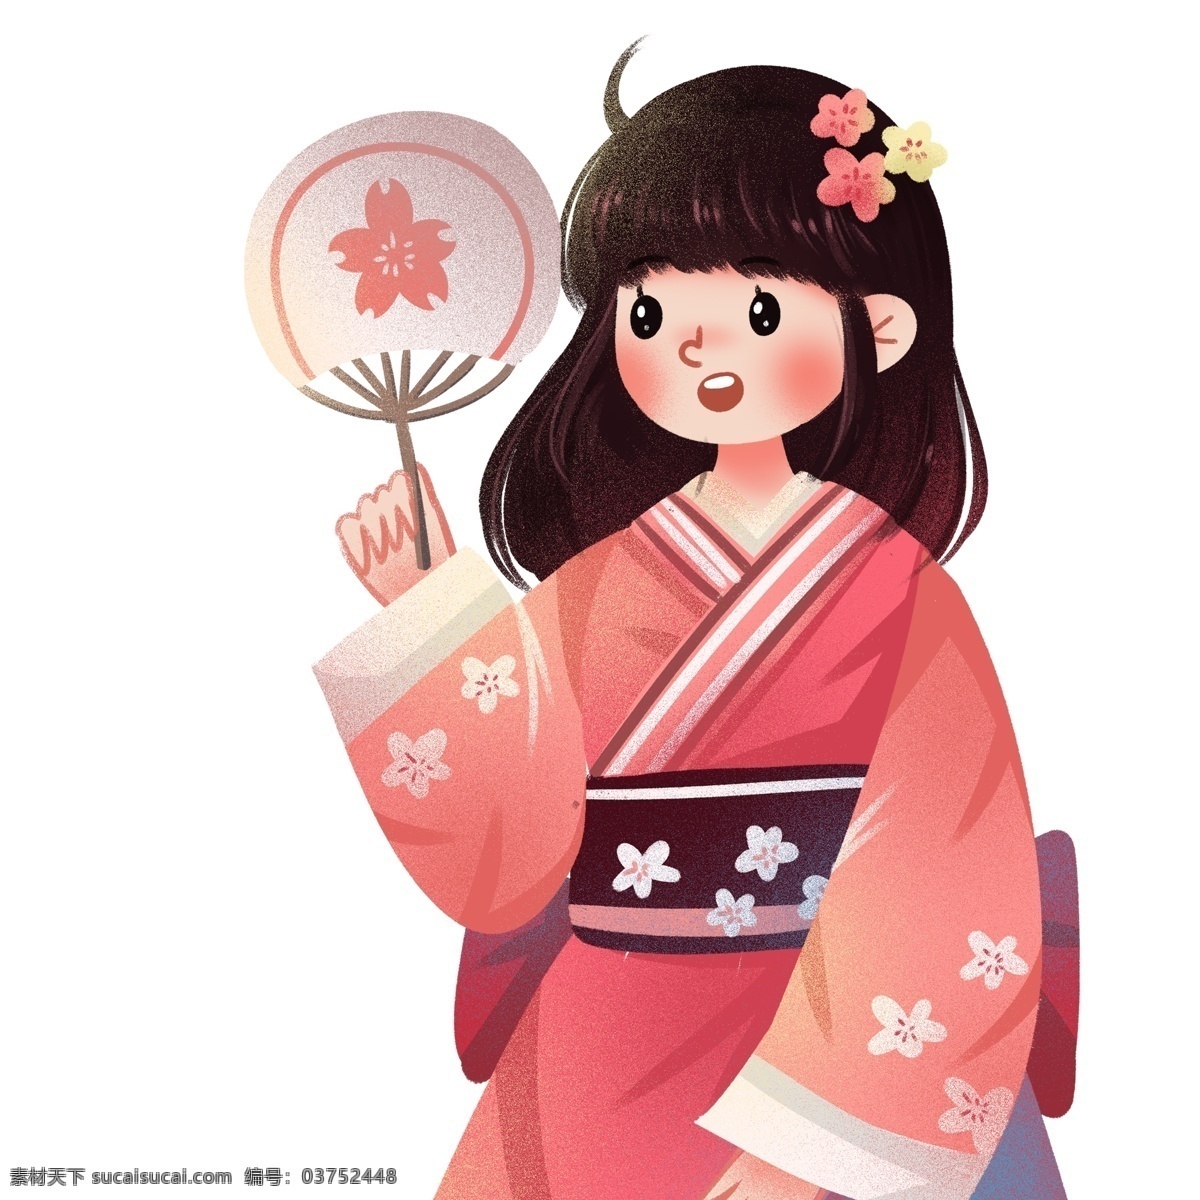 手绘 头 戴 樱花 手 扇子 穿着 和服 女孩 卡通 日本 少女 女生 插画 人物设计 可爱少女